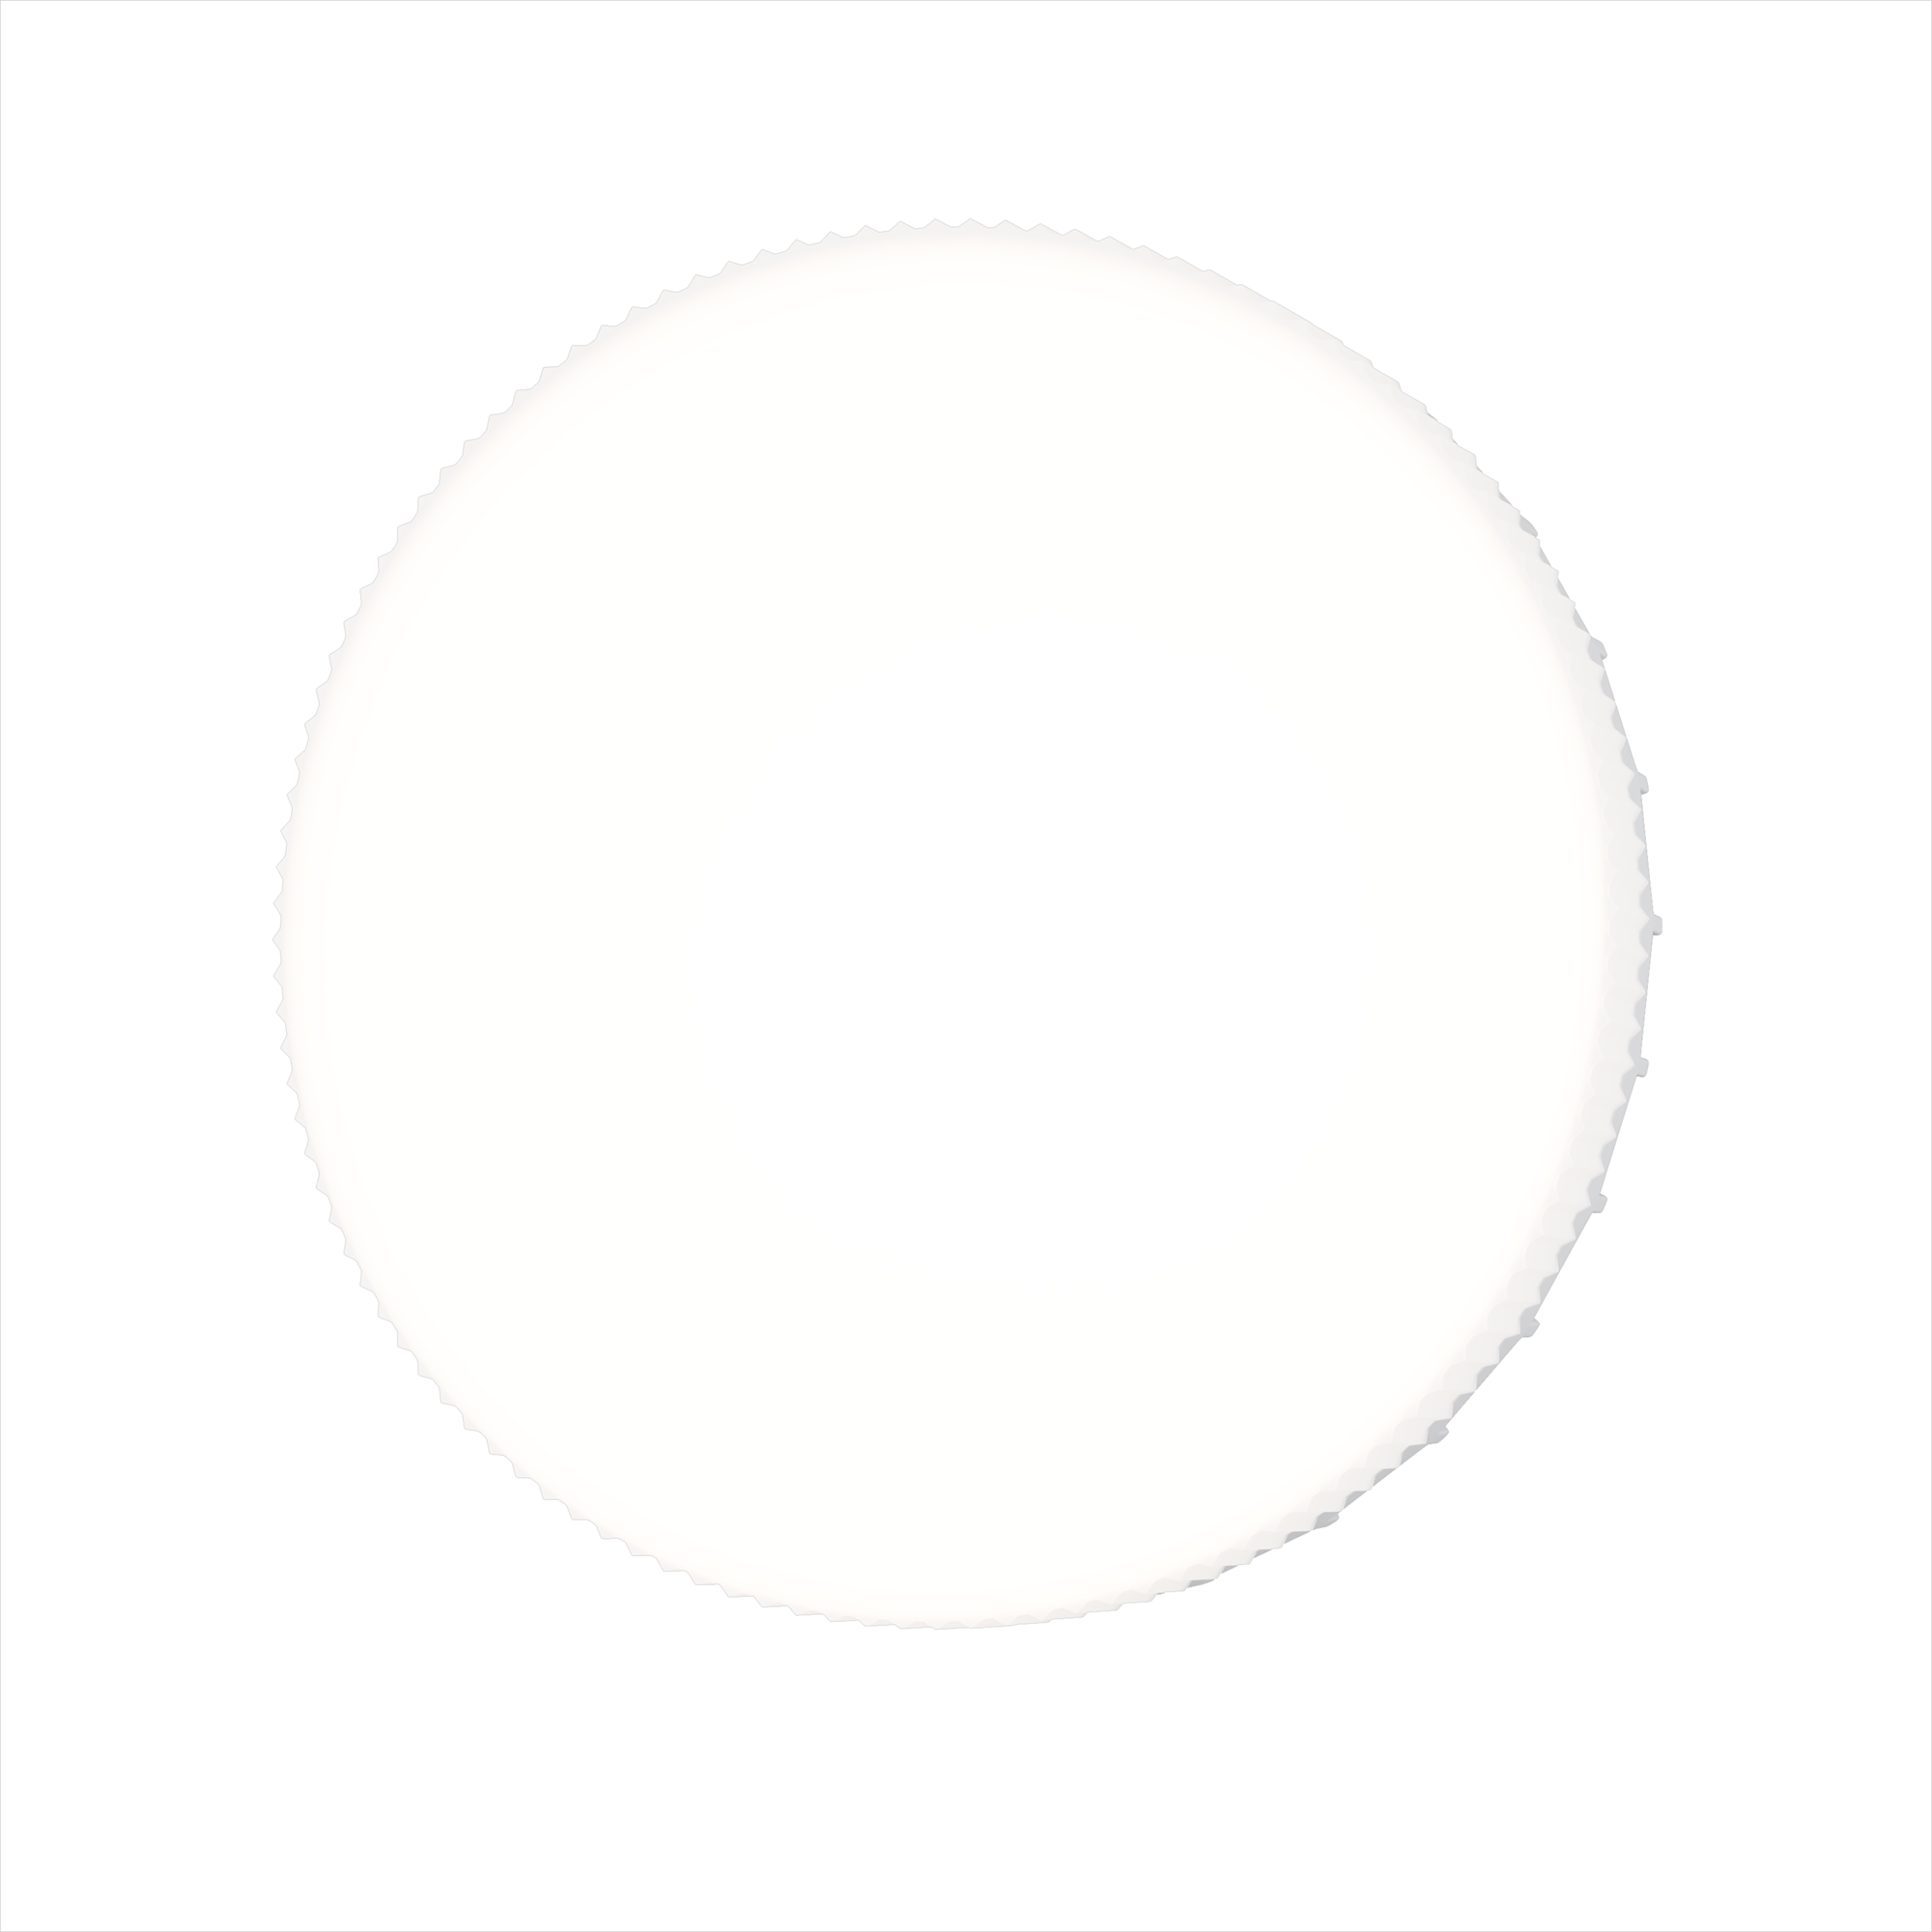 Светодиодная лампа Voltega WI-FI BULBS Таблетка 9W 630Lm 2700K GX53 2430, цвет белый